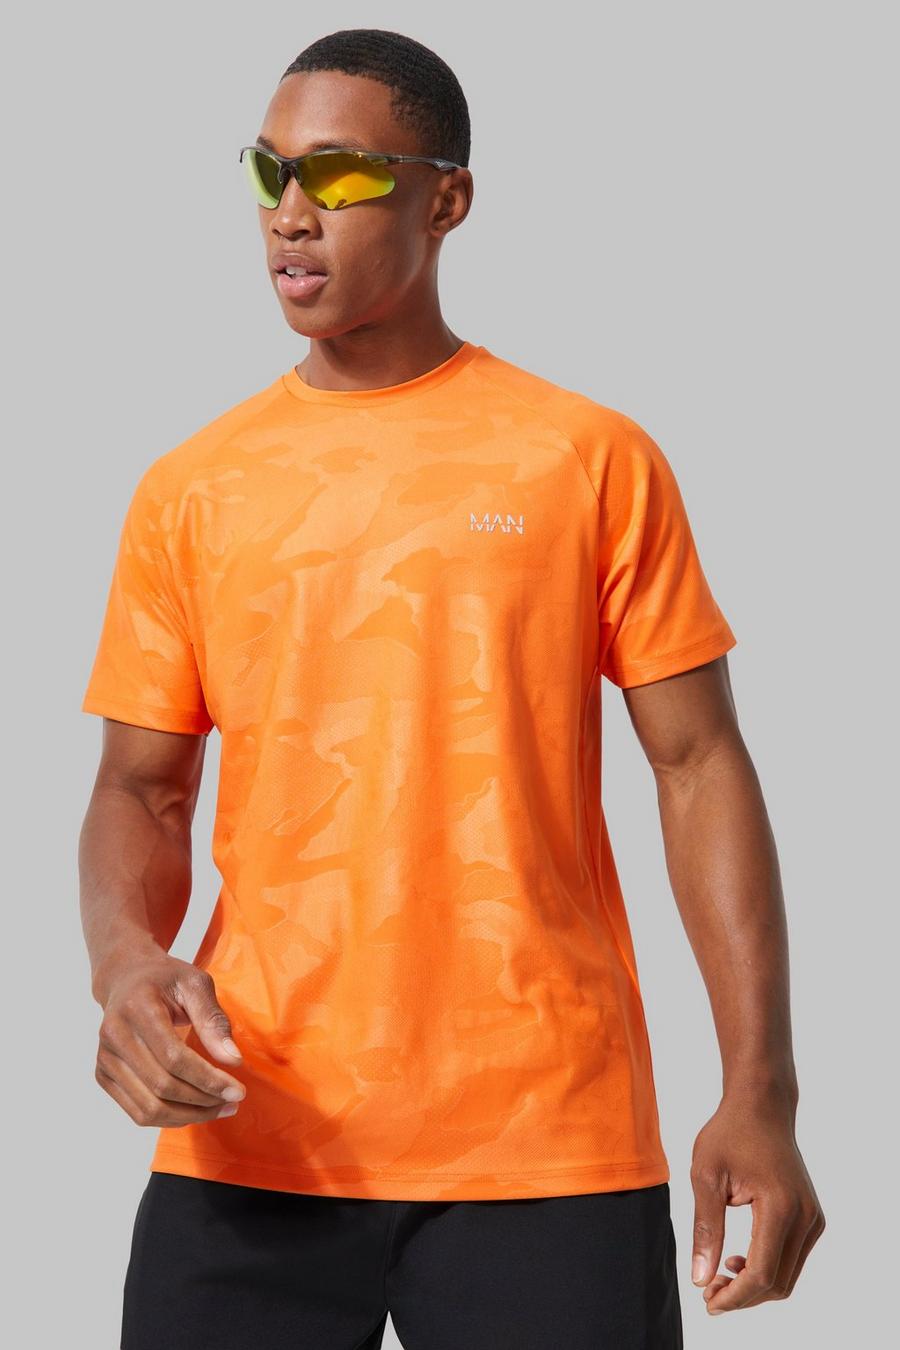 Man Active Camouflage Raglan Performance T-Shirt, Orange image number 1